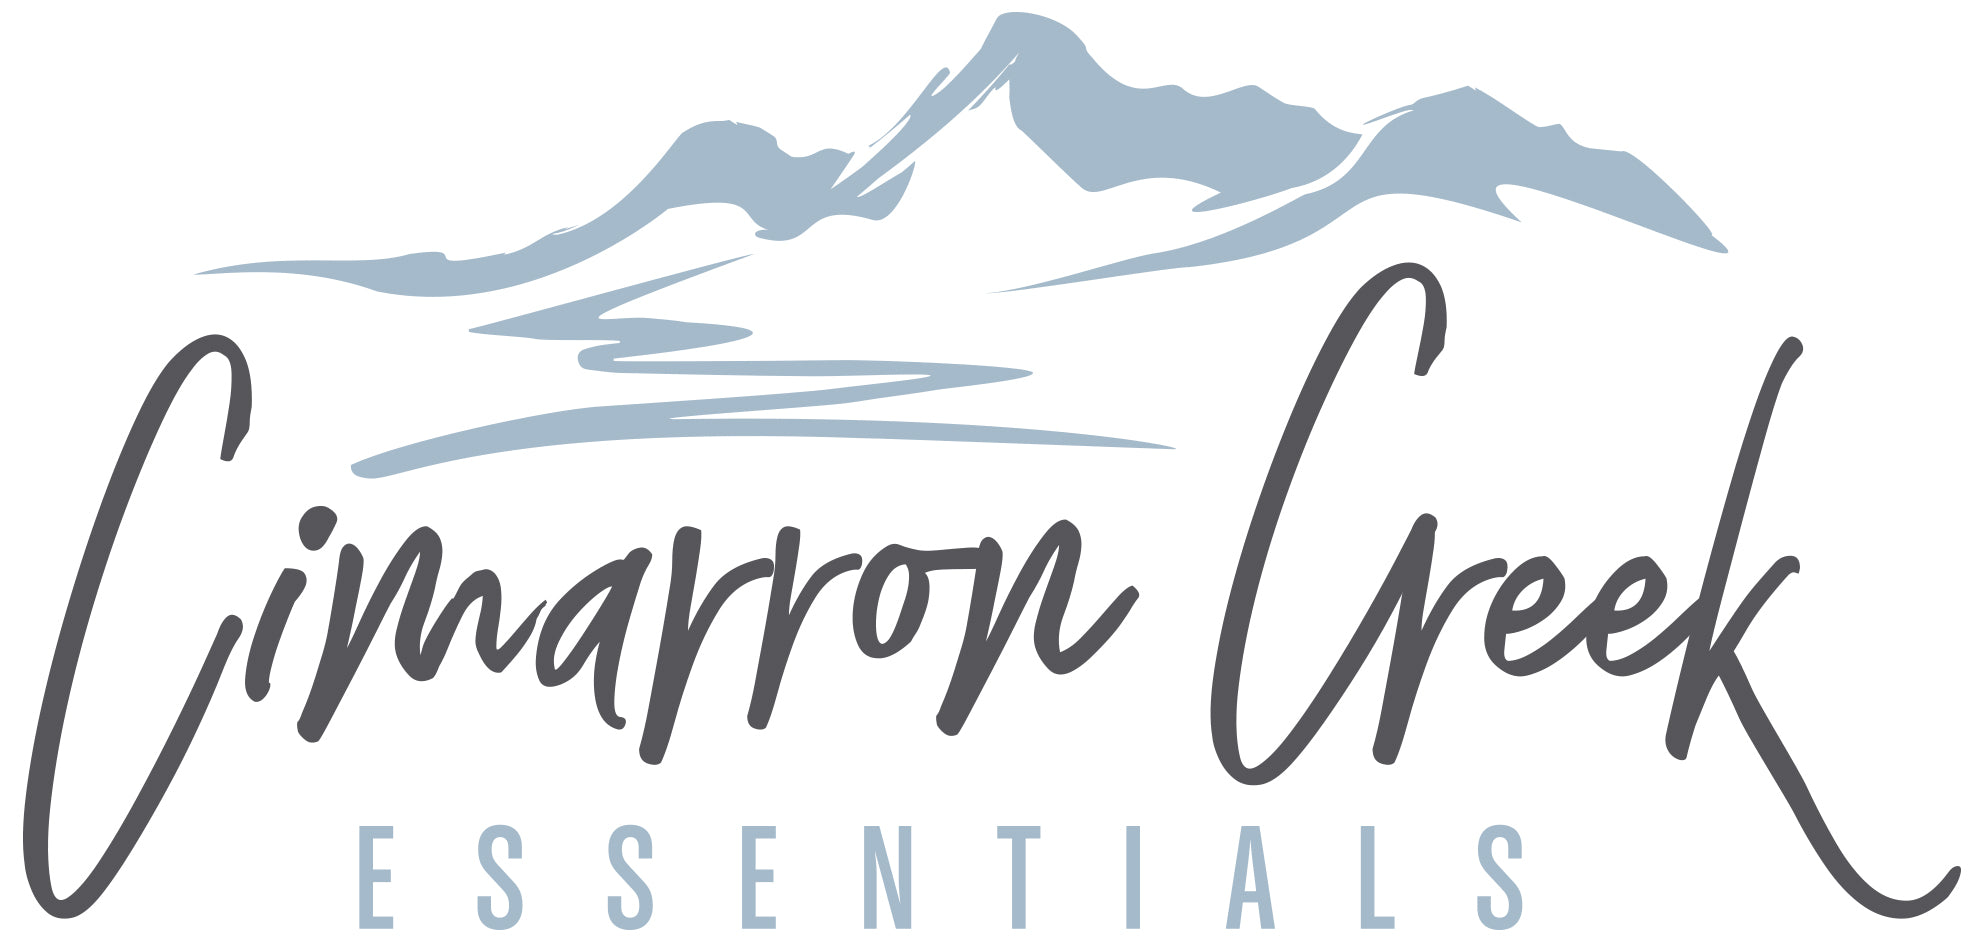 Cimarron Creek Essentials